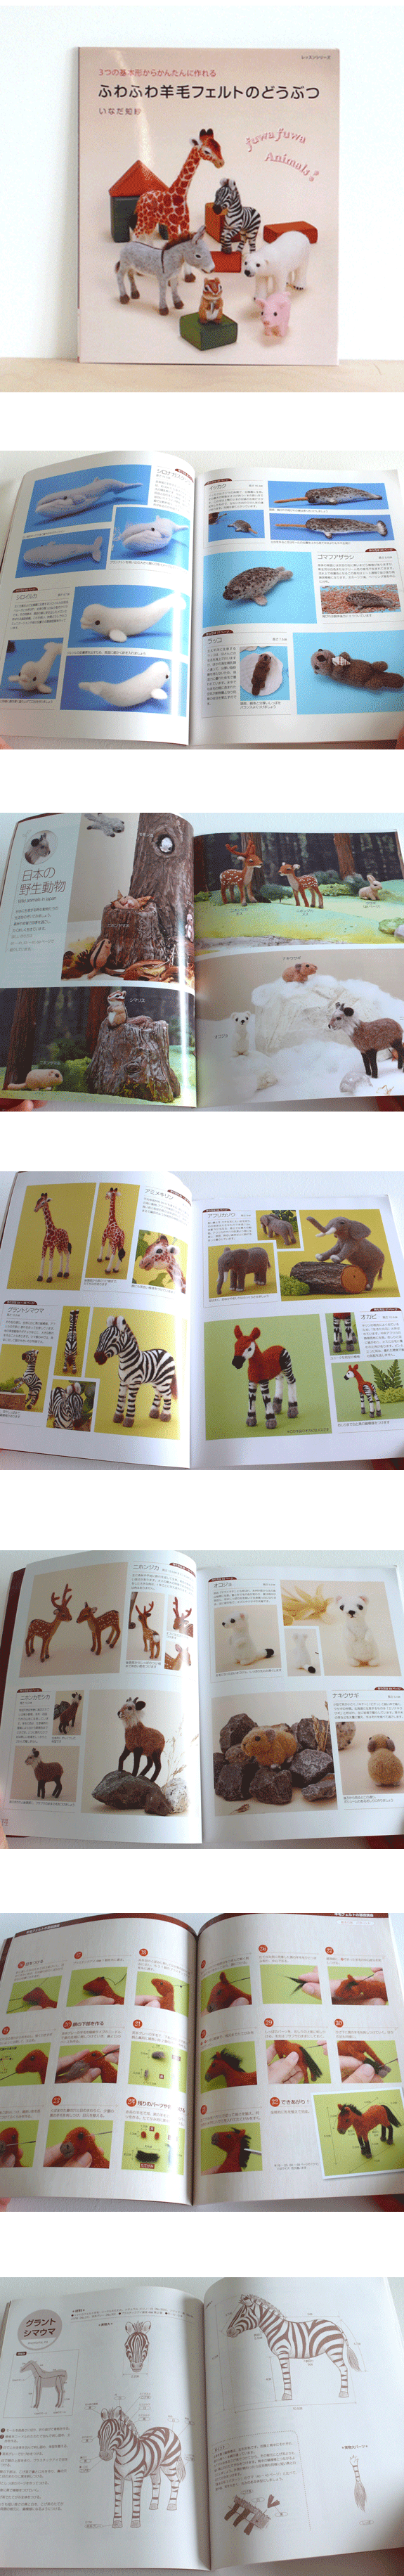 fuwa fuwa needle wool felt animals book [felt animals, needle wool felt animals, make wool animals]